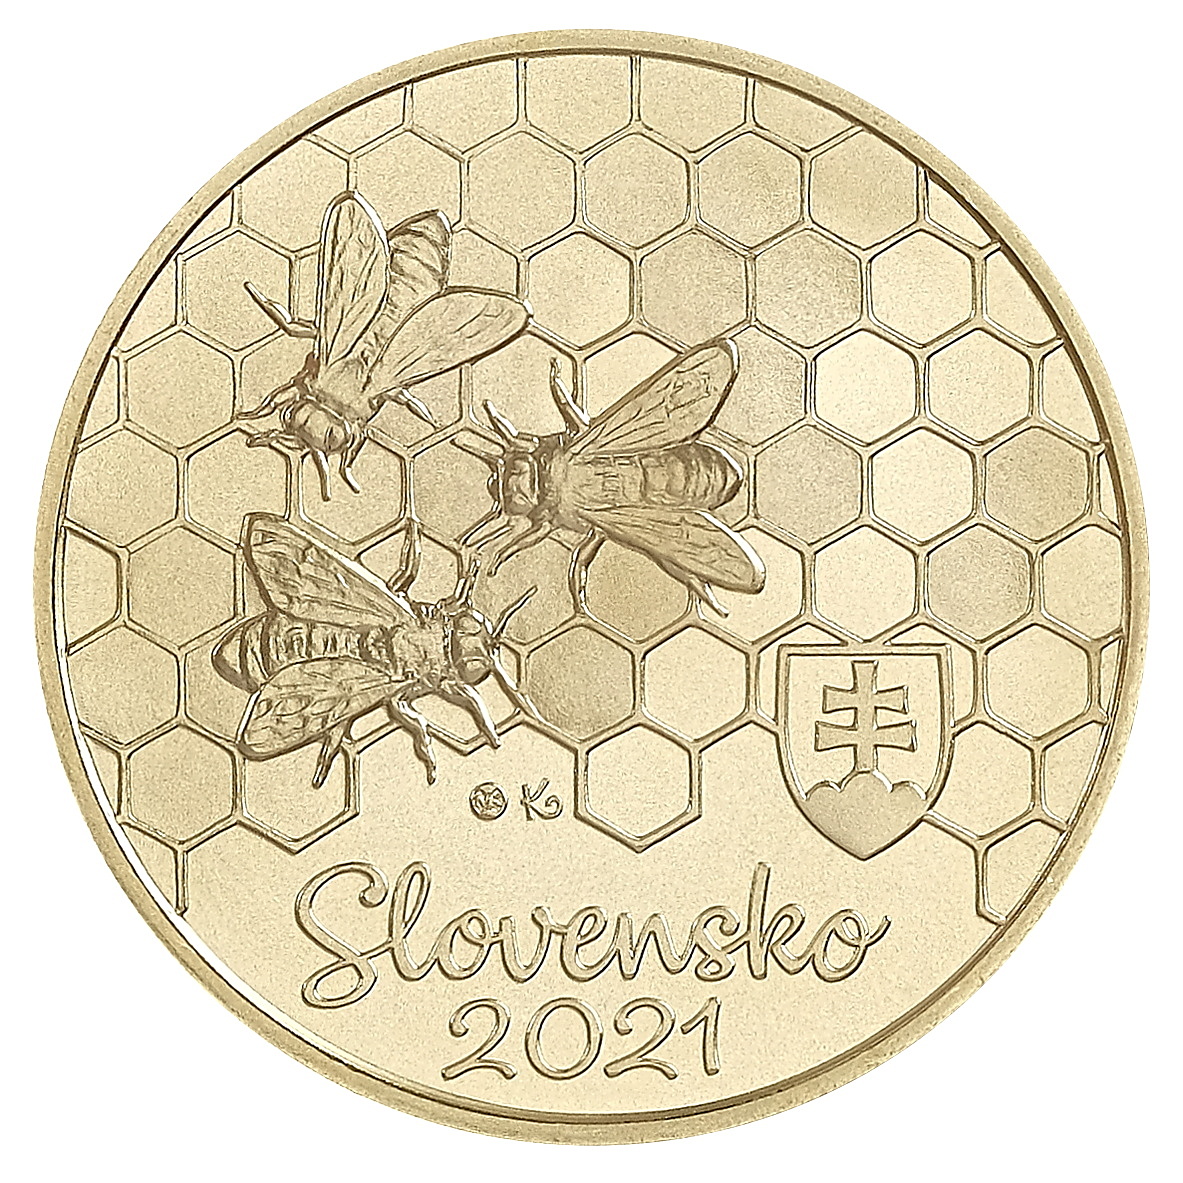 Zberateľská eurominca z obyčajných kovov v nominálnej hodnote 5 eur s tematikou Fauna a flóra na Slovensku – včela medonosná